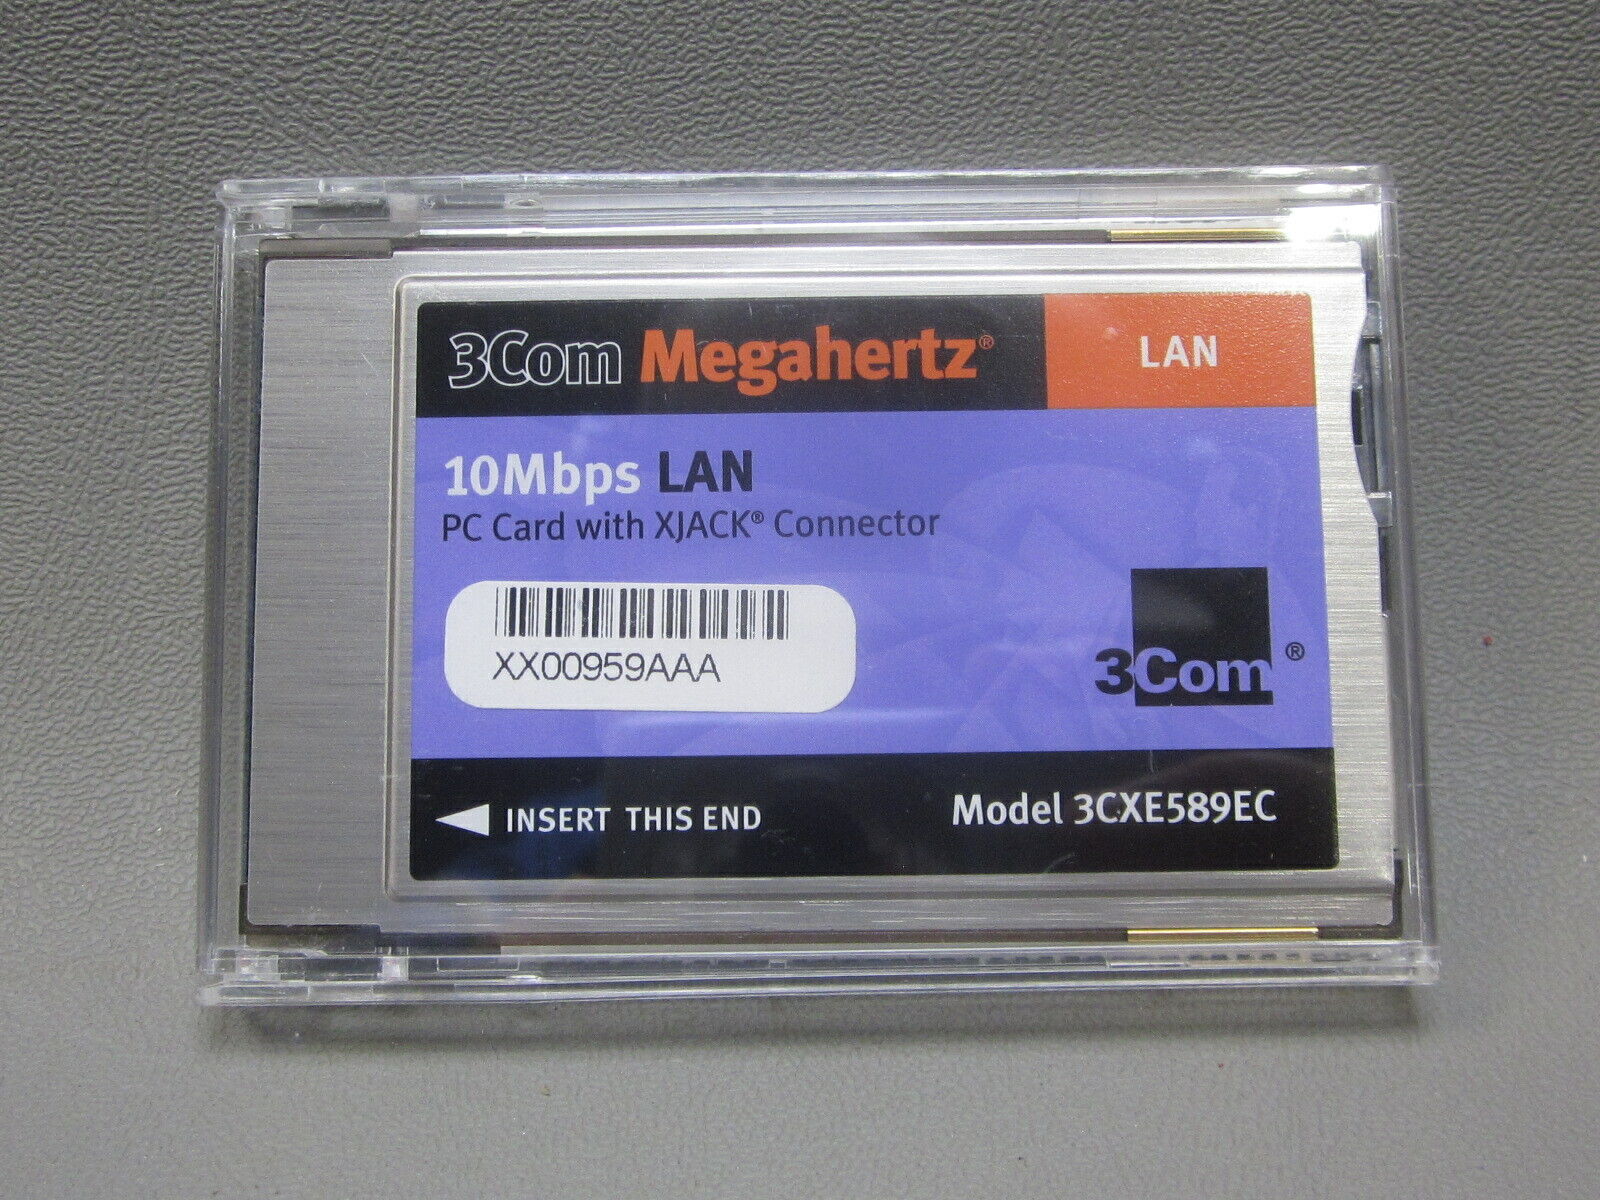 NEW   3COM MEGAHERTZ 10MBPS LAN PC CARD WITH XJACK CONNECTOR 3CXE589EC